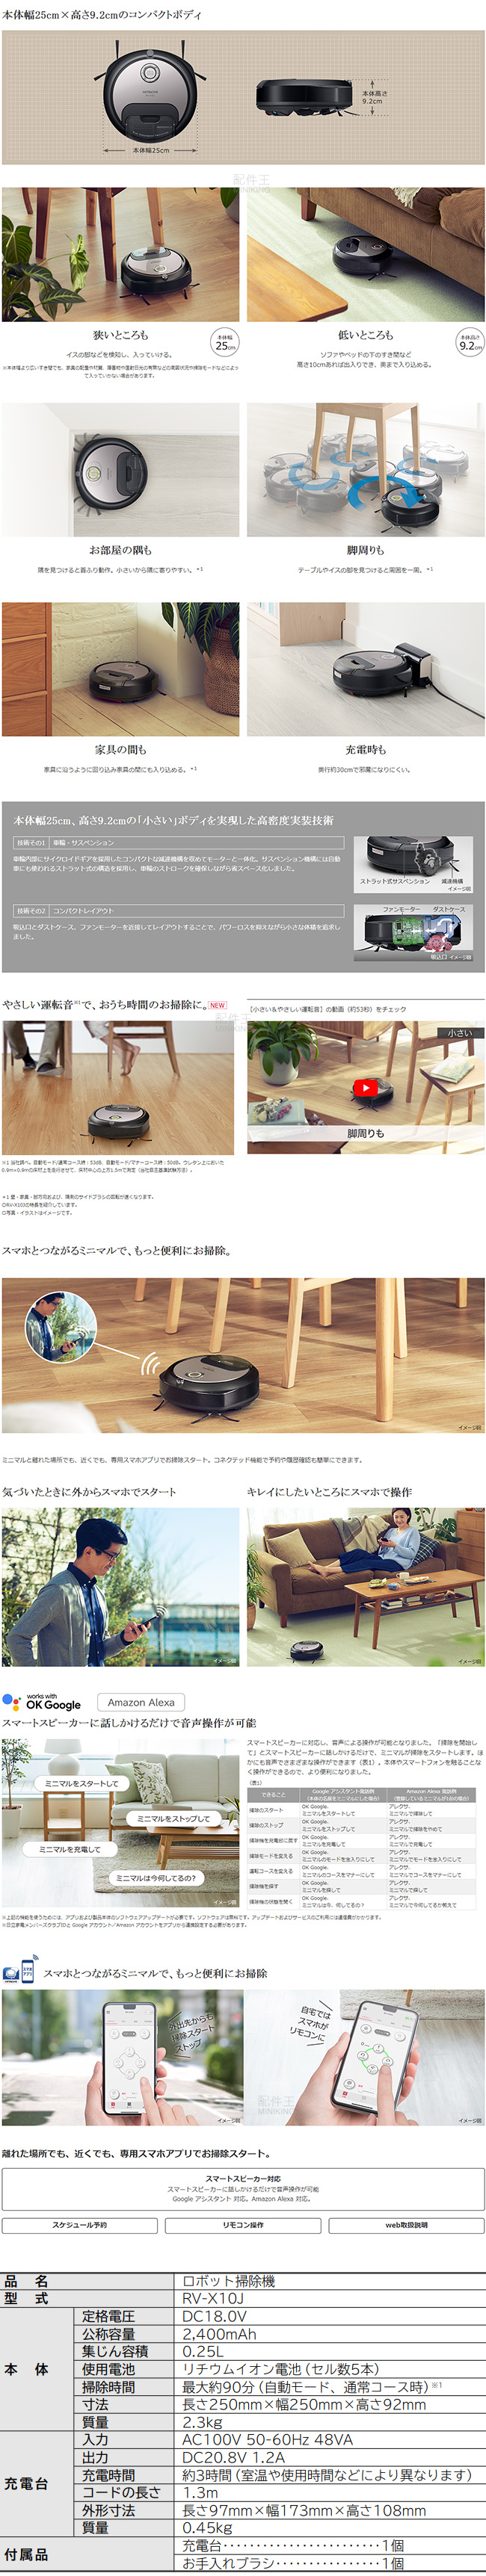 日本代購2021新款空運HITACHI 日立RV-X10J 掃地機器人吸塵器小型集塵app操作日本製| 左東精品代購直營店| 樂天市場Rakuten